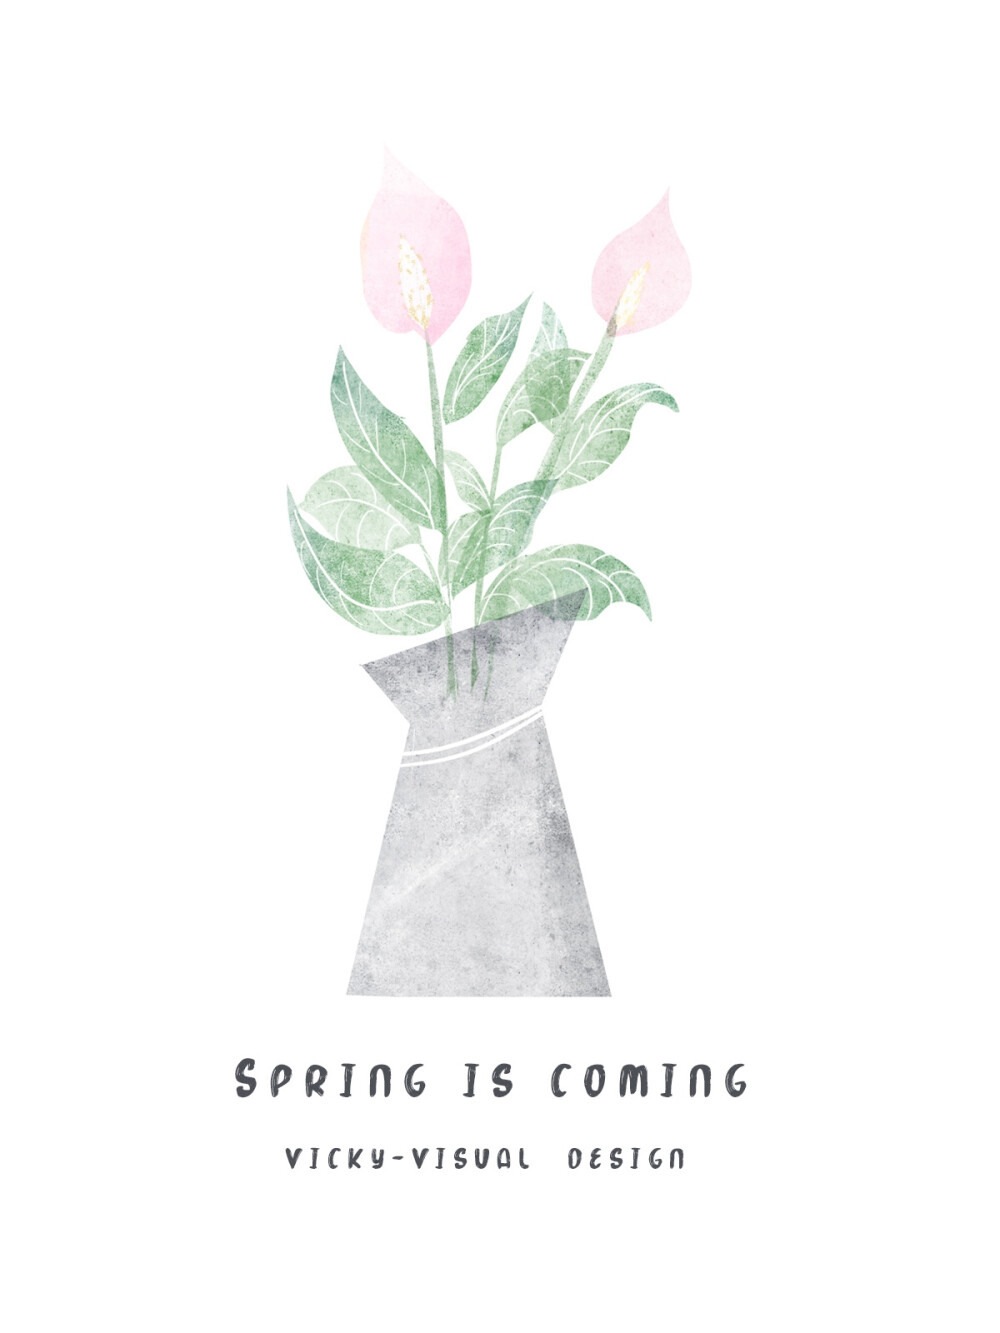 #3.26@001的壁纸#
&森系水彩植物
春天总有一天会来到，一些都将会是欣欣向荣 的样子！